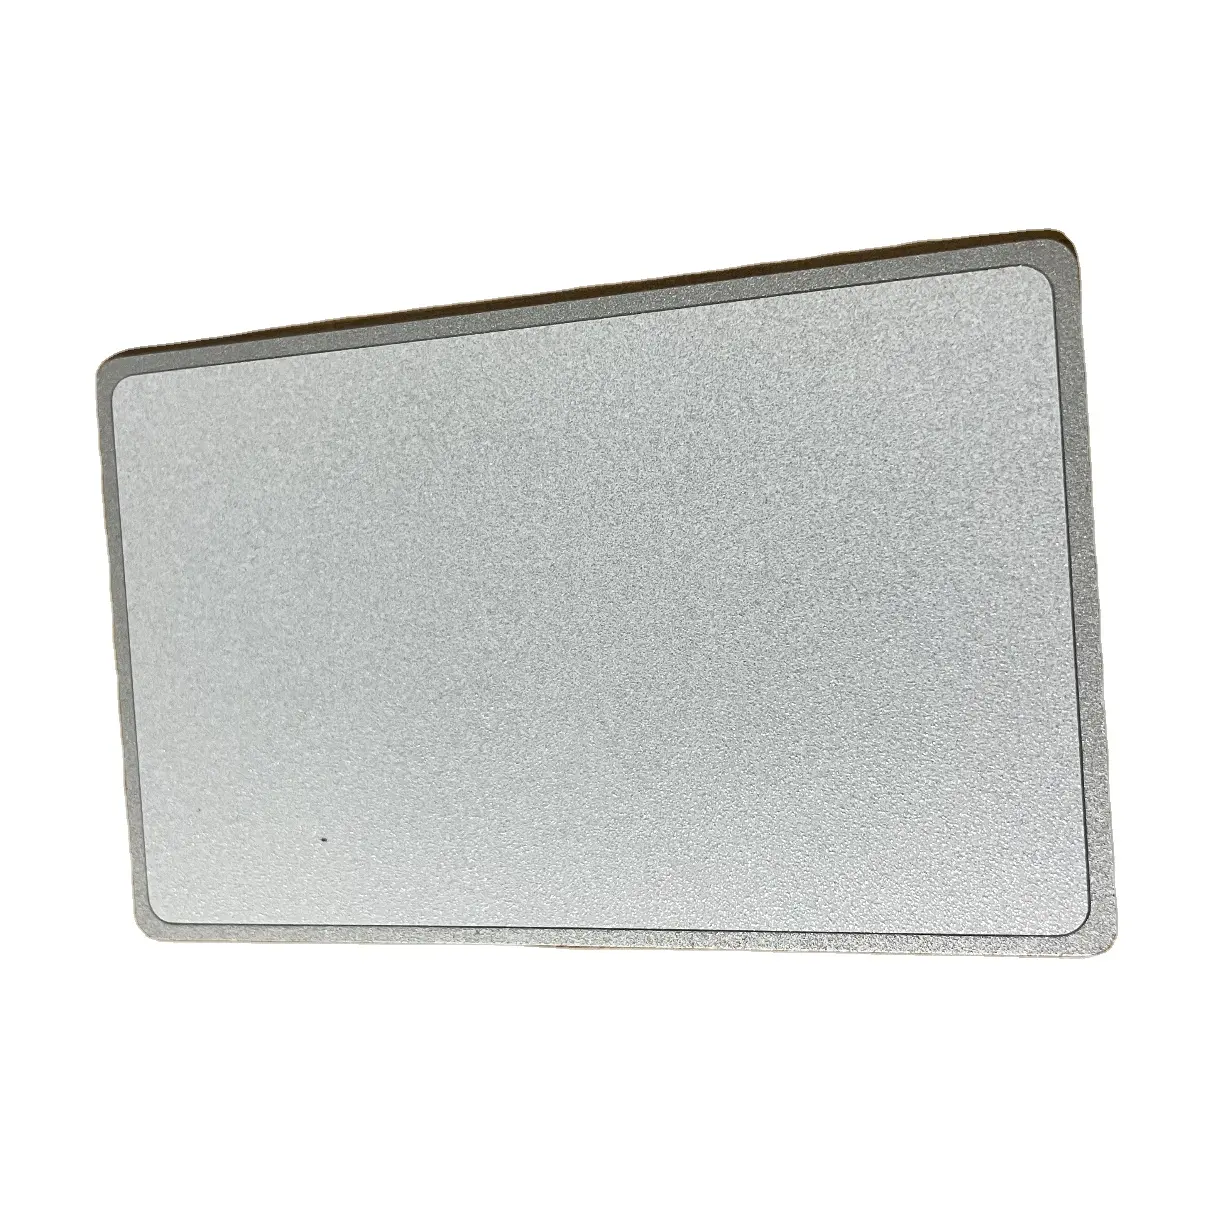 Nfc215-بطاقة أعمال nfc معدنية فارغة قابلة للطباعة ، ستايل هجين ، باللون الأسود/الفضي/الذهبي ، حسب اختيارك